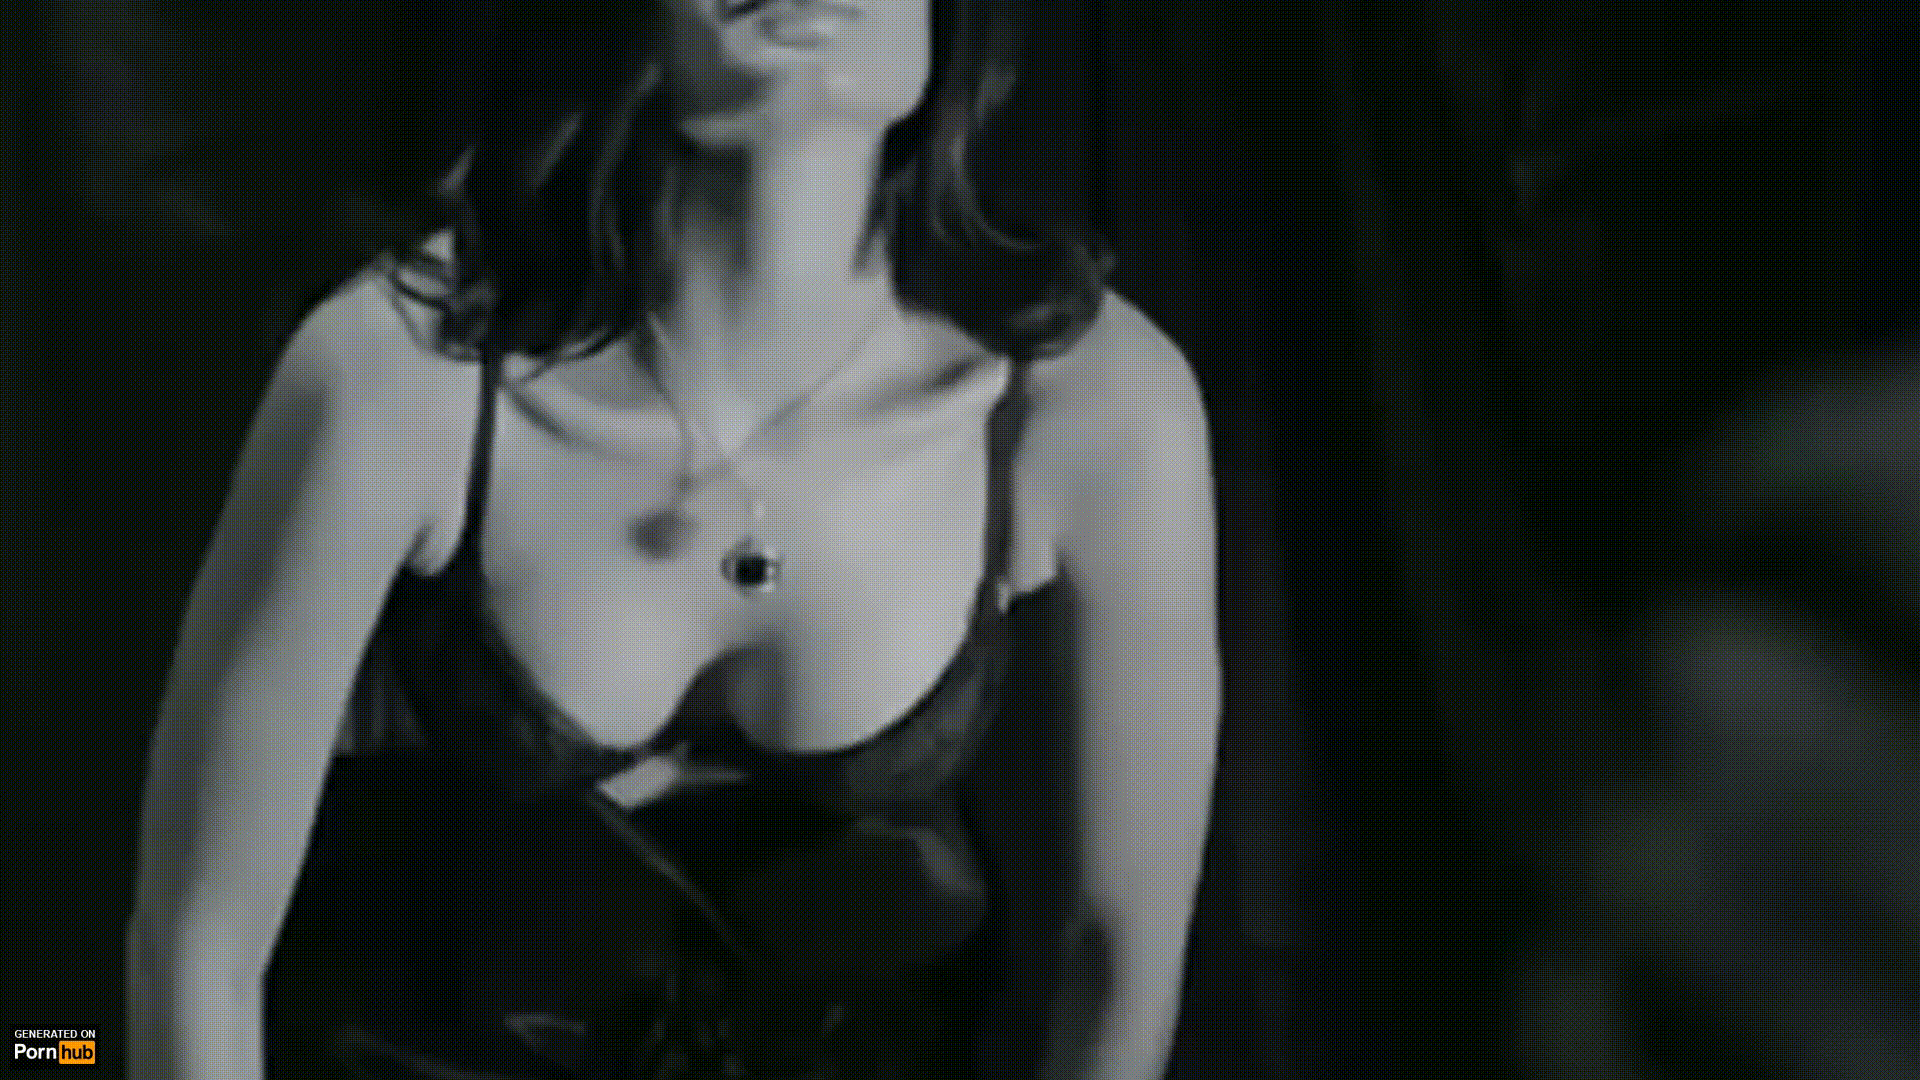 Karishma Tanna Fucking Video - Karishma Tanna Undressing Porn Gif | Pornhub.com